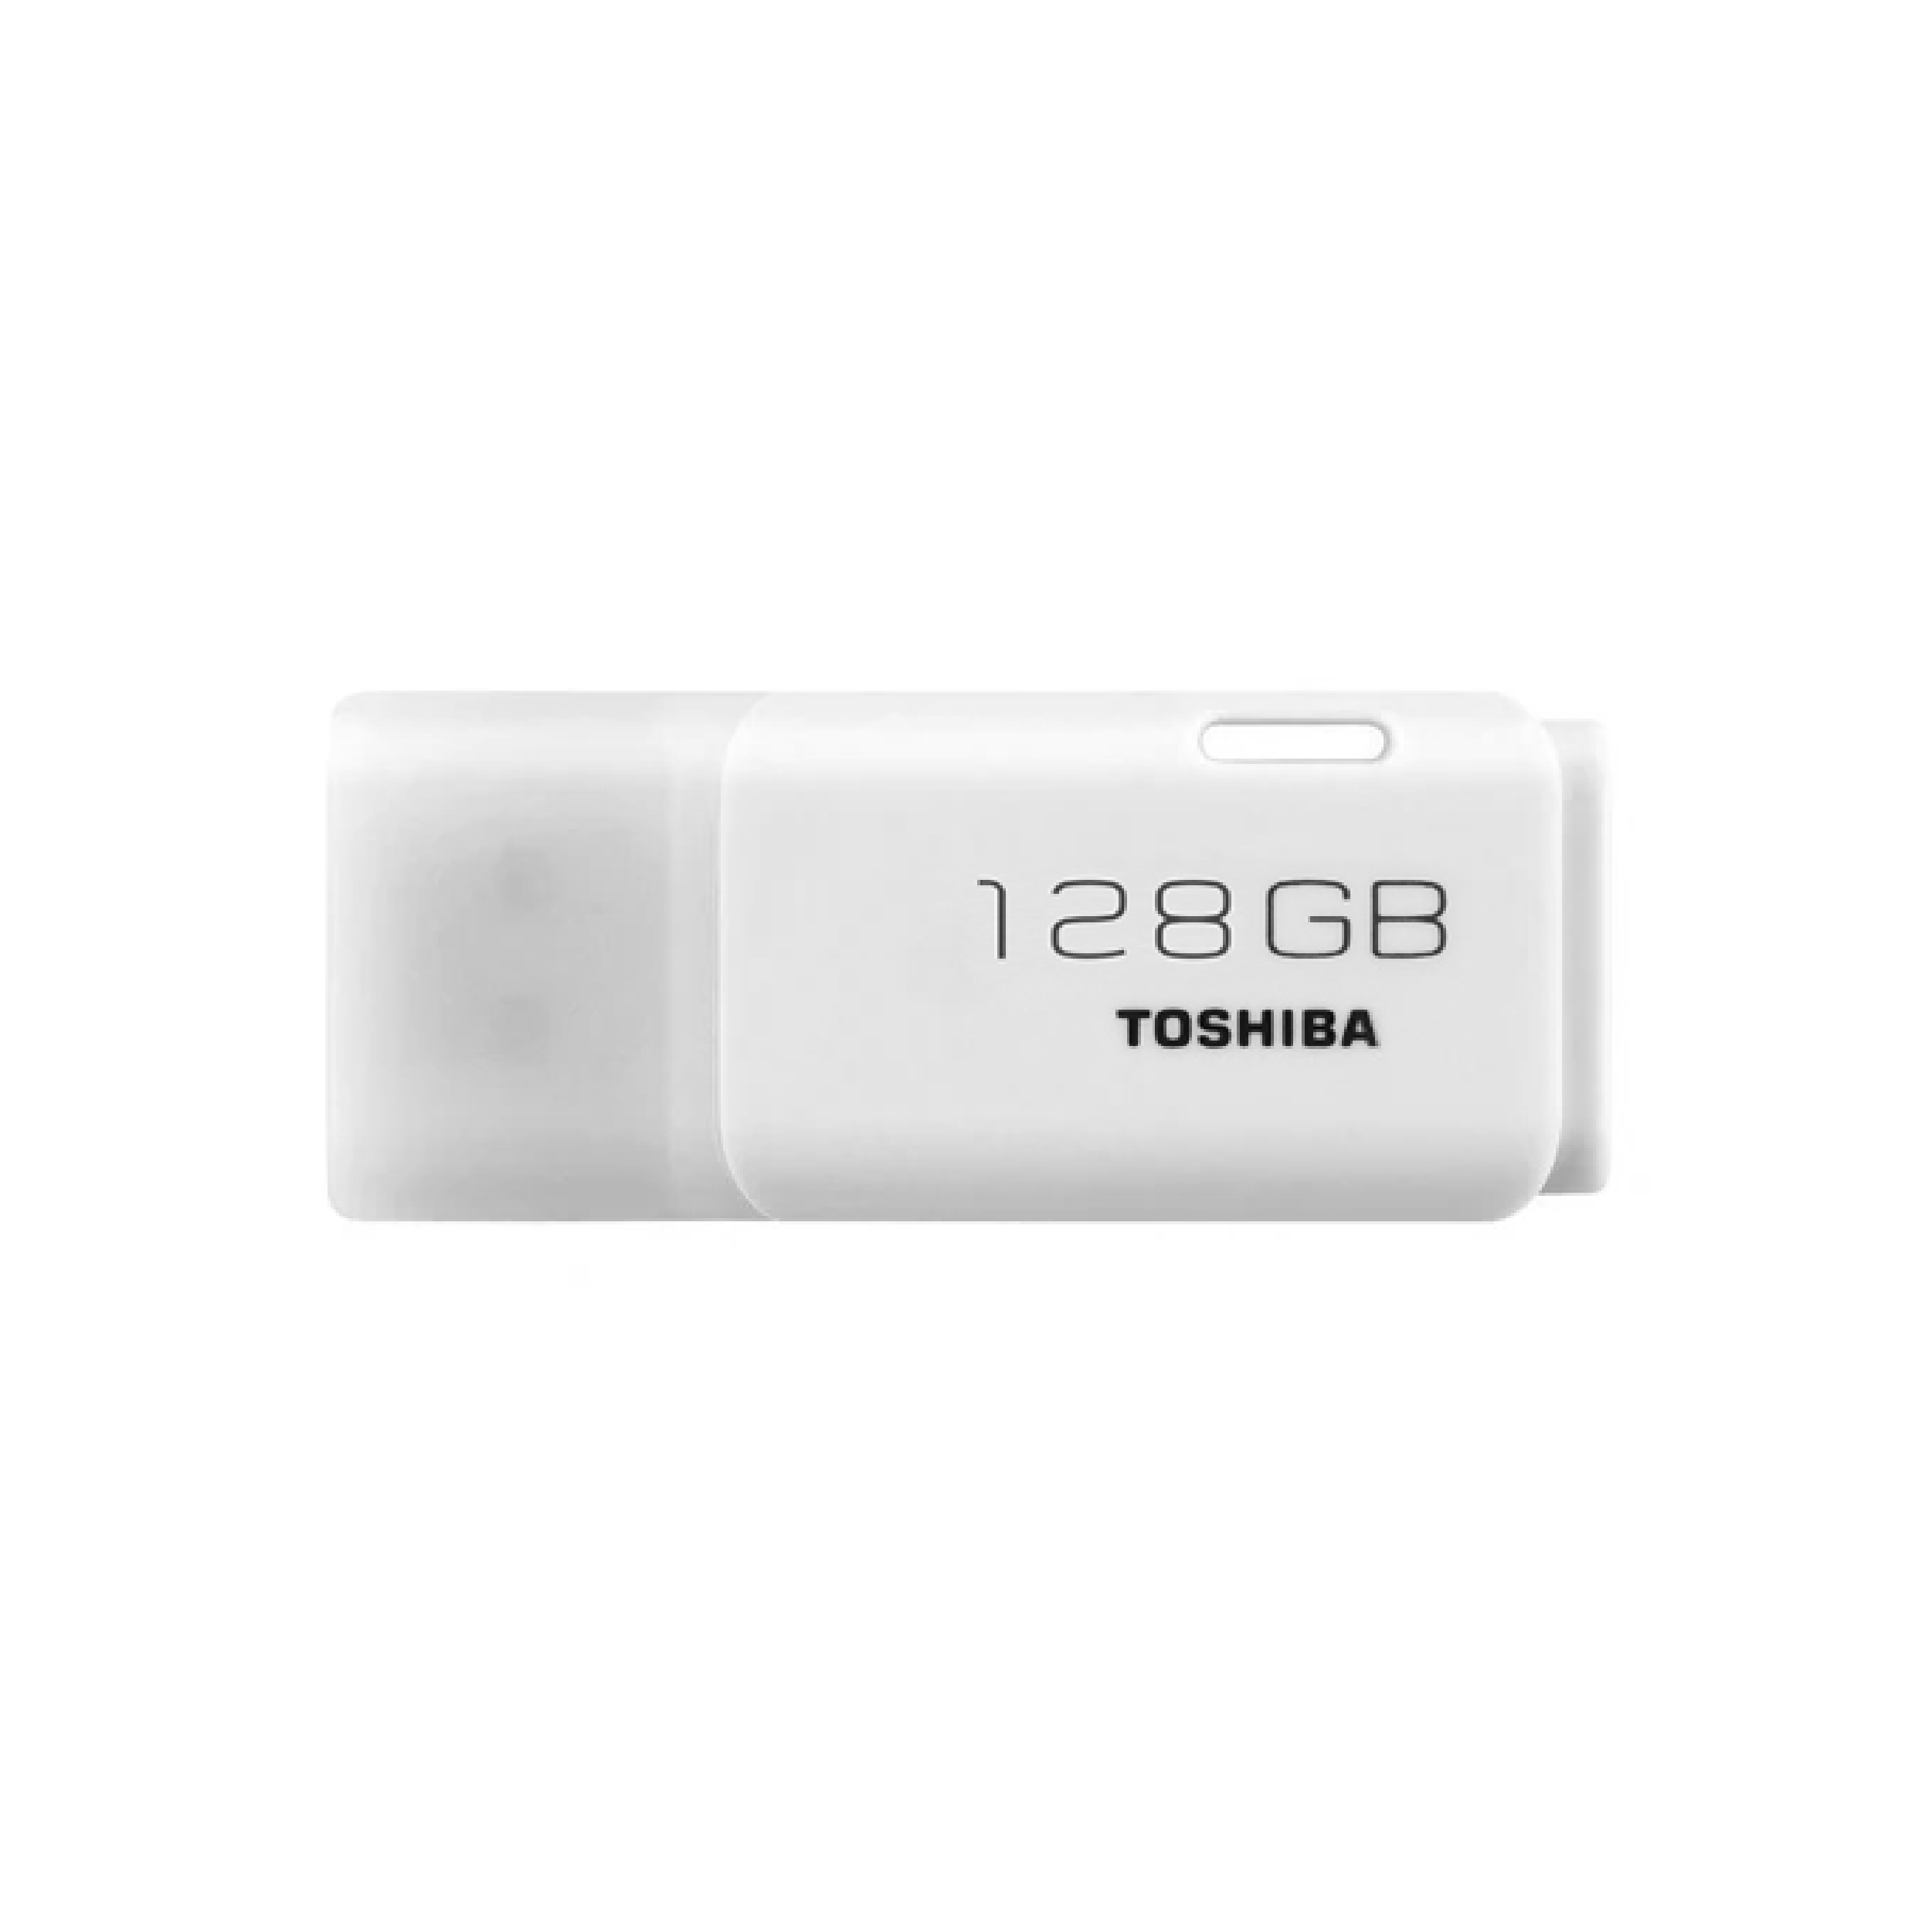 Toshiba TransMemory, 128GB, USB 2.0, USB Flash Drive, White (U202)